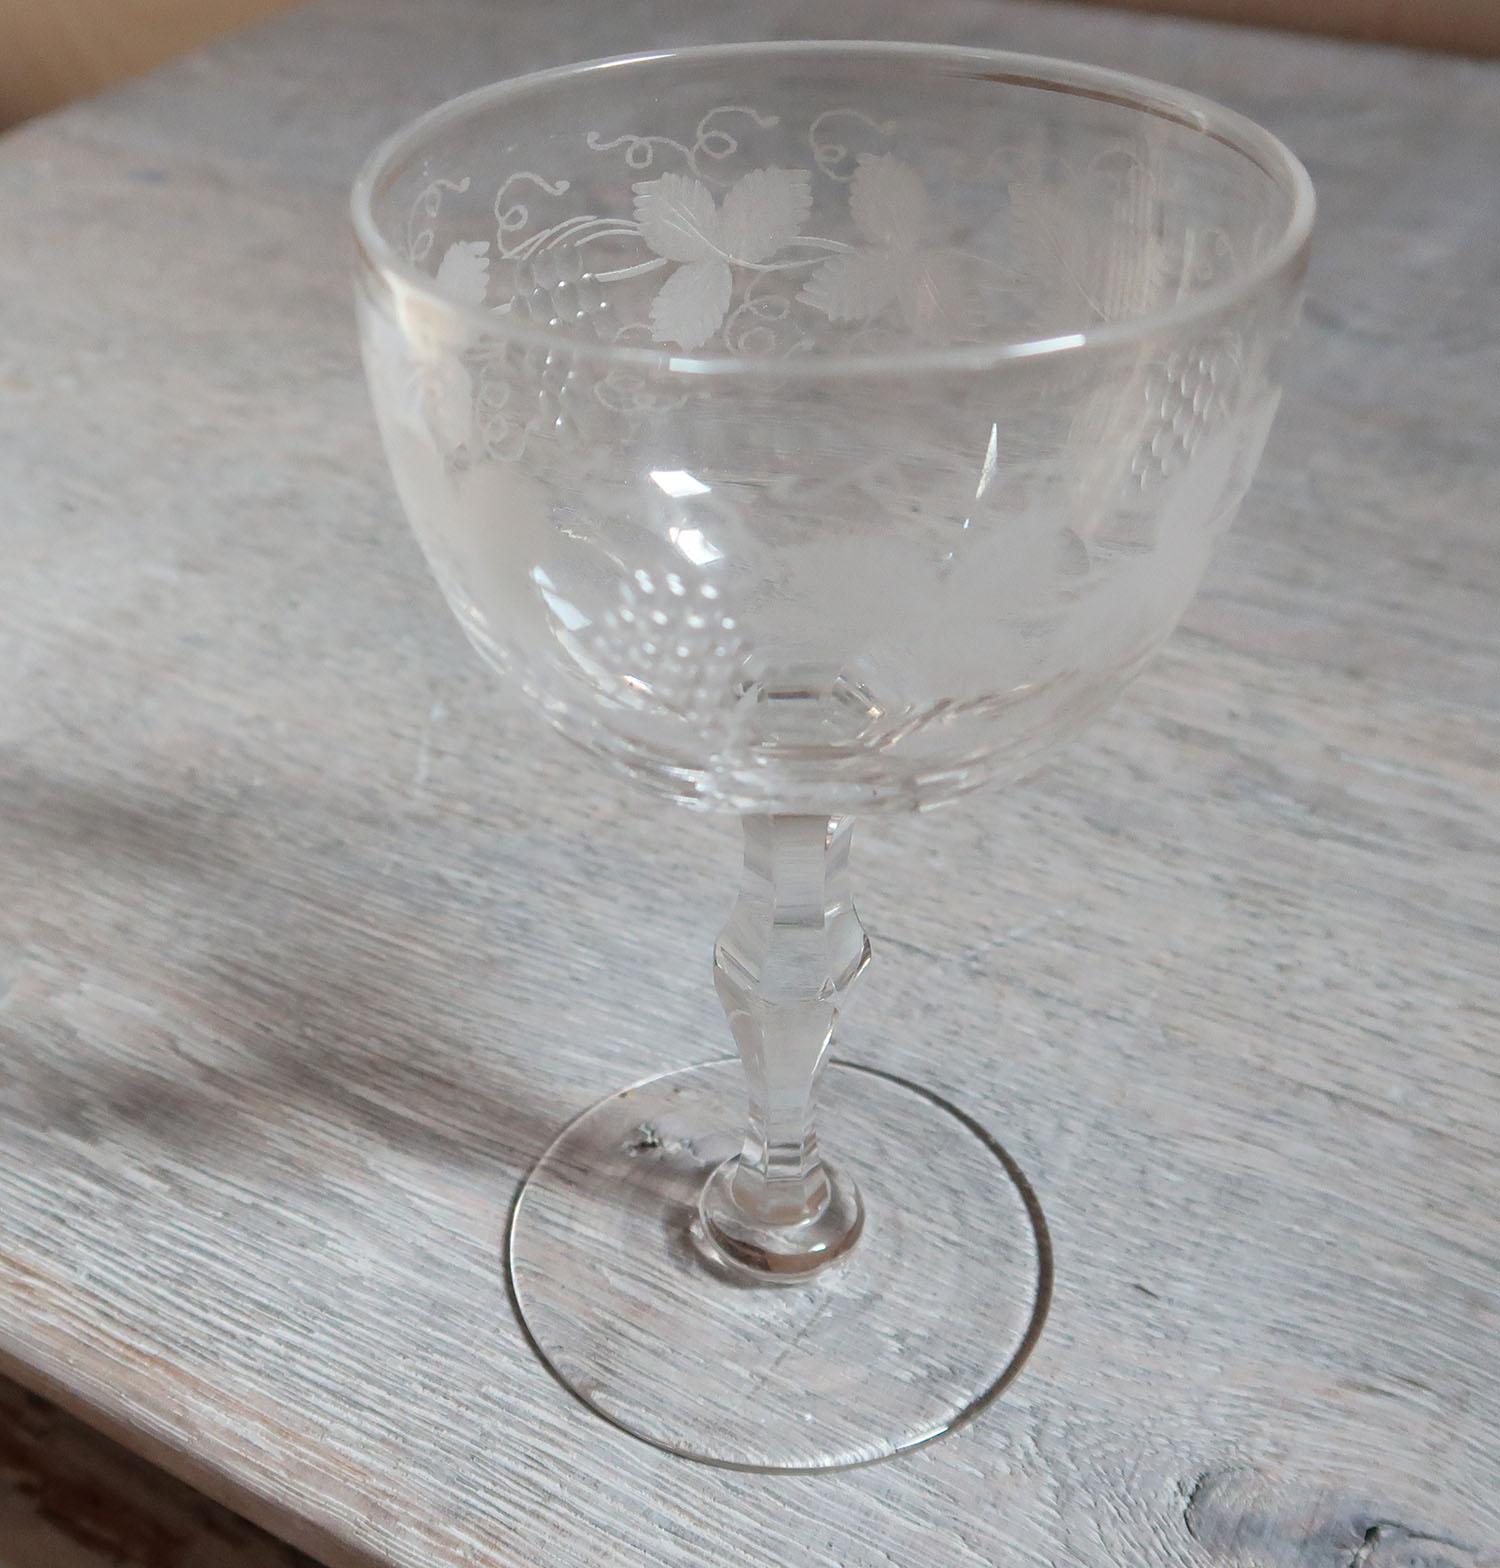 Sehr hübsches Glas mit geätzter Weinrebe und geschliffenem Traubendekor

Englisch, Ende 19. Jahrhundert

Handgefertigt

Sehr angenehm zu benutzen.



